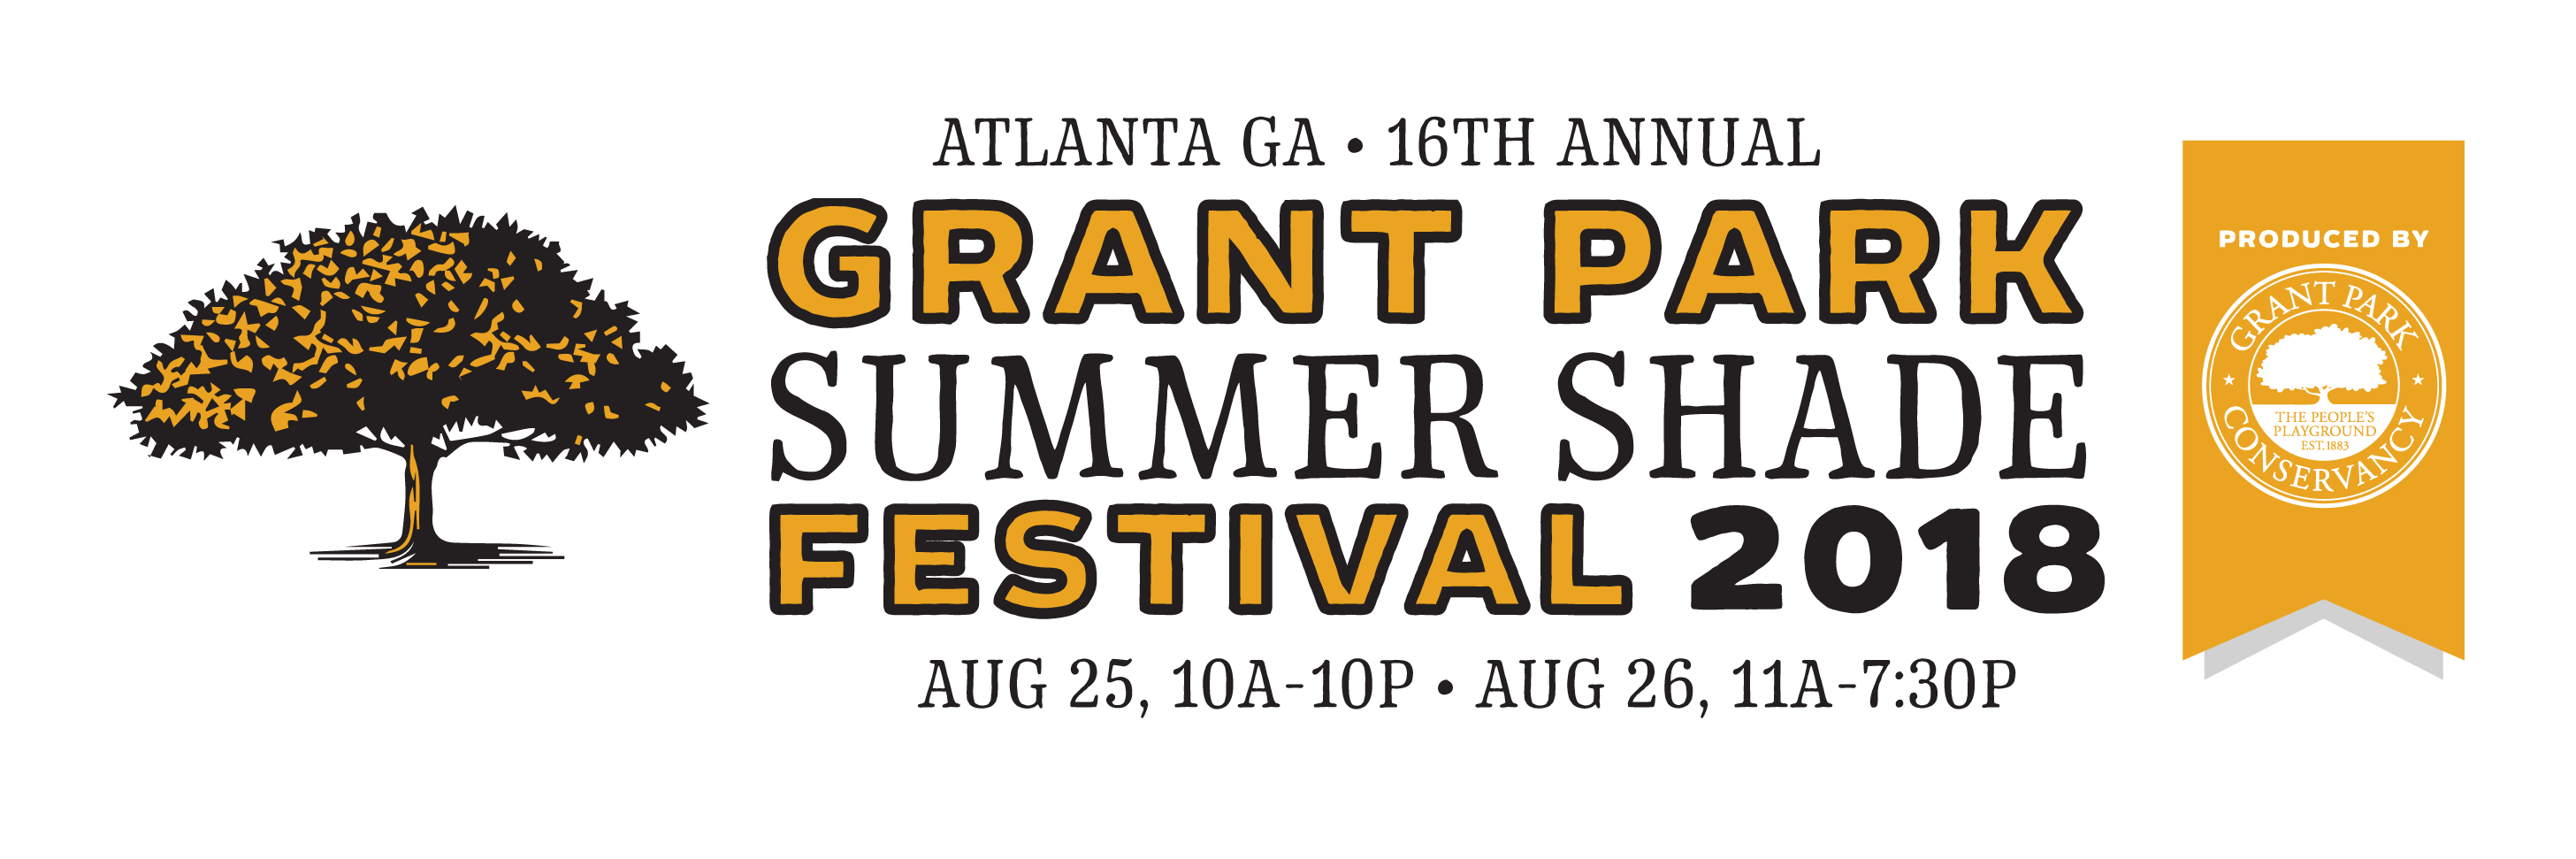 2018 Grant Park Summer Shade Festival